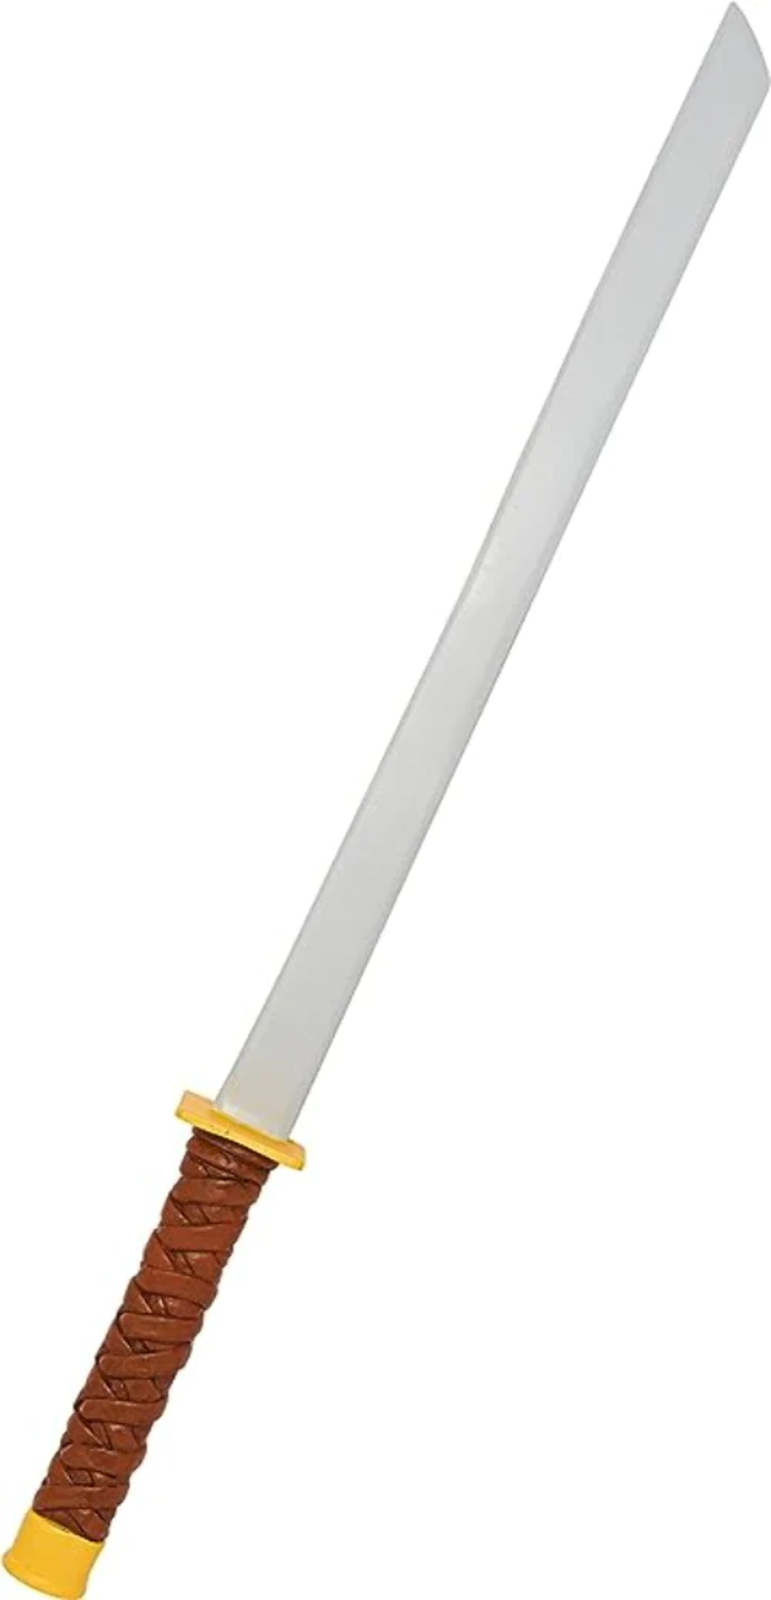 Leo’s Katana Sword